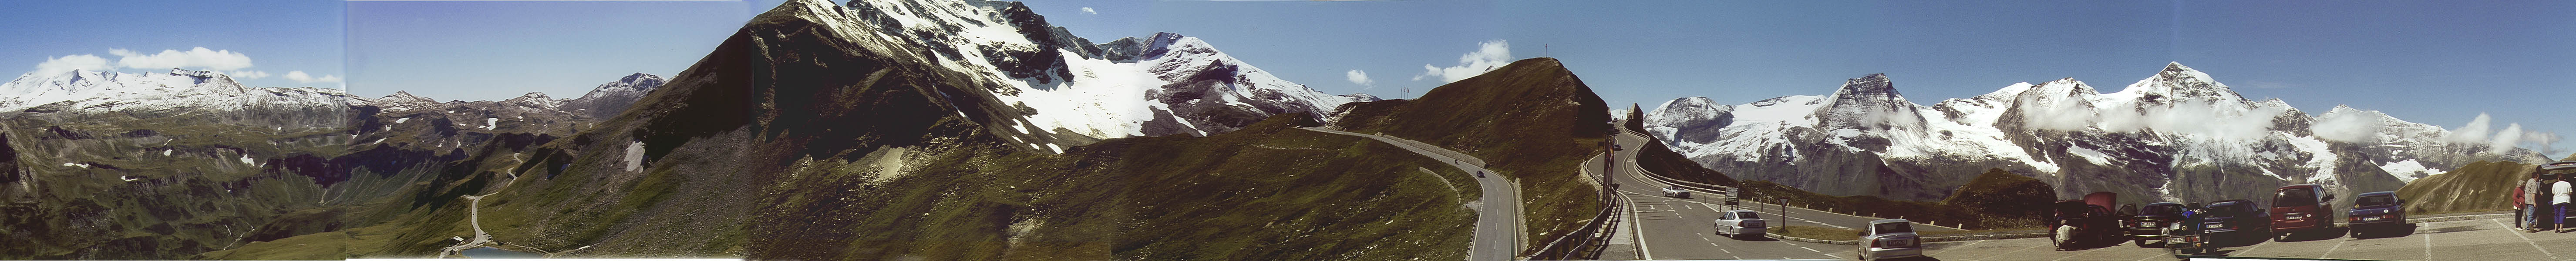 Hier das Bild mit einem ca. 180° Rund-Um-Blick von schon besagtem Rasthaus am Fuscher Törl. Der Blick beginnt links südlicher Richtung, an der Fuscher Lacke und dem Fuscher Törl vorbei und endet in Richtung Norden mit dem Großen Wiesbachhorn. Der Berg, dessen Spitze leider nicht zu sehen ist, ist der Brennkogel mit 3018 m.Torsten Kähler